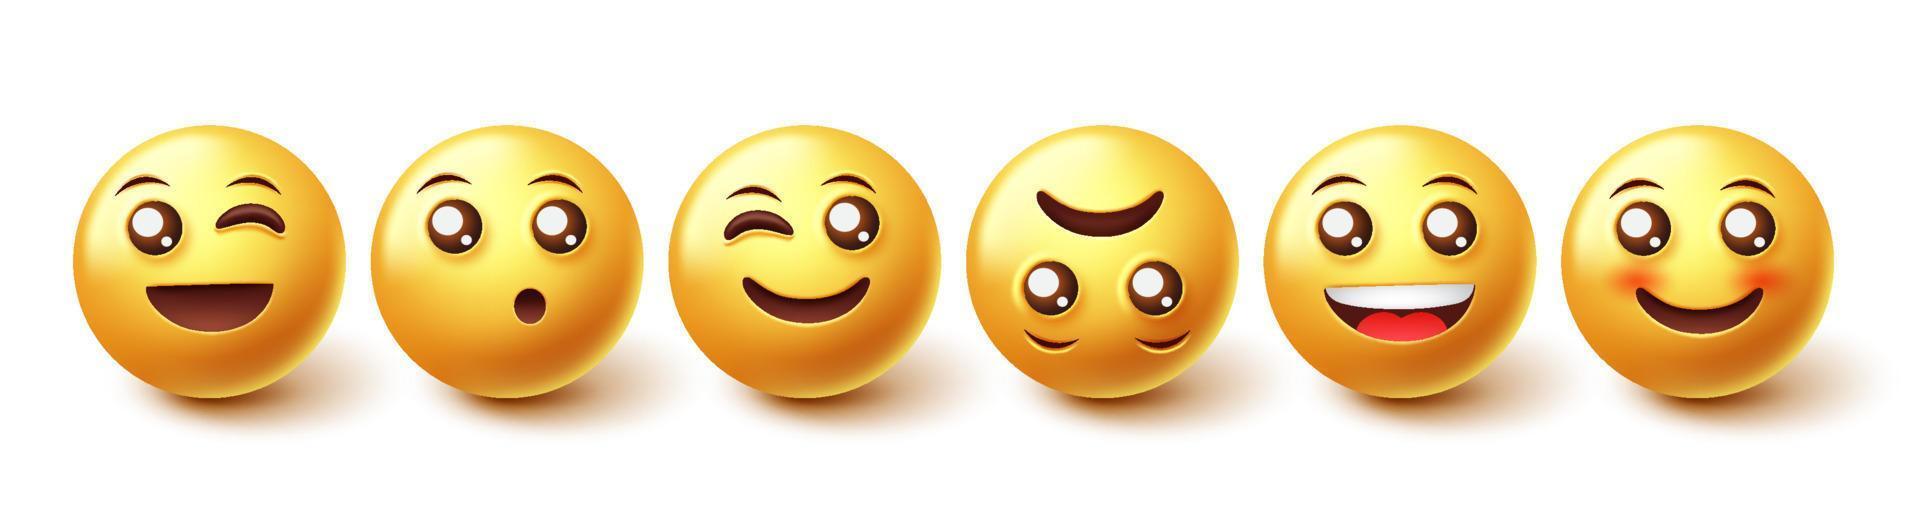 Emojis-Zeichenvektorsatz. Emoji-Gesichtsreaktionssammlung in gelben Symbolgesichtern isoliert in weißem Hintergrund für Emoticon-Charaktere Grafikdesign-Elemente. Vektor-Illustration. vektor